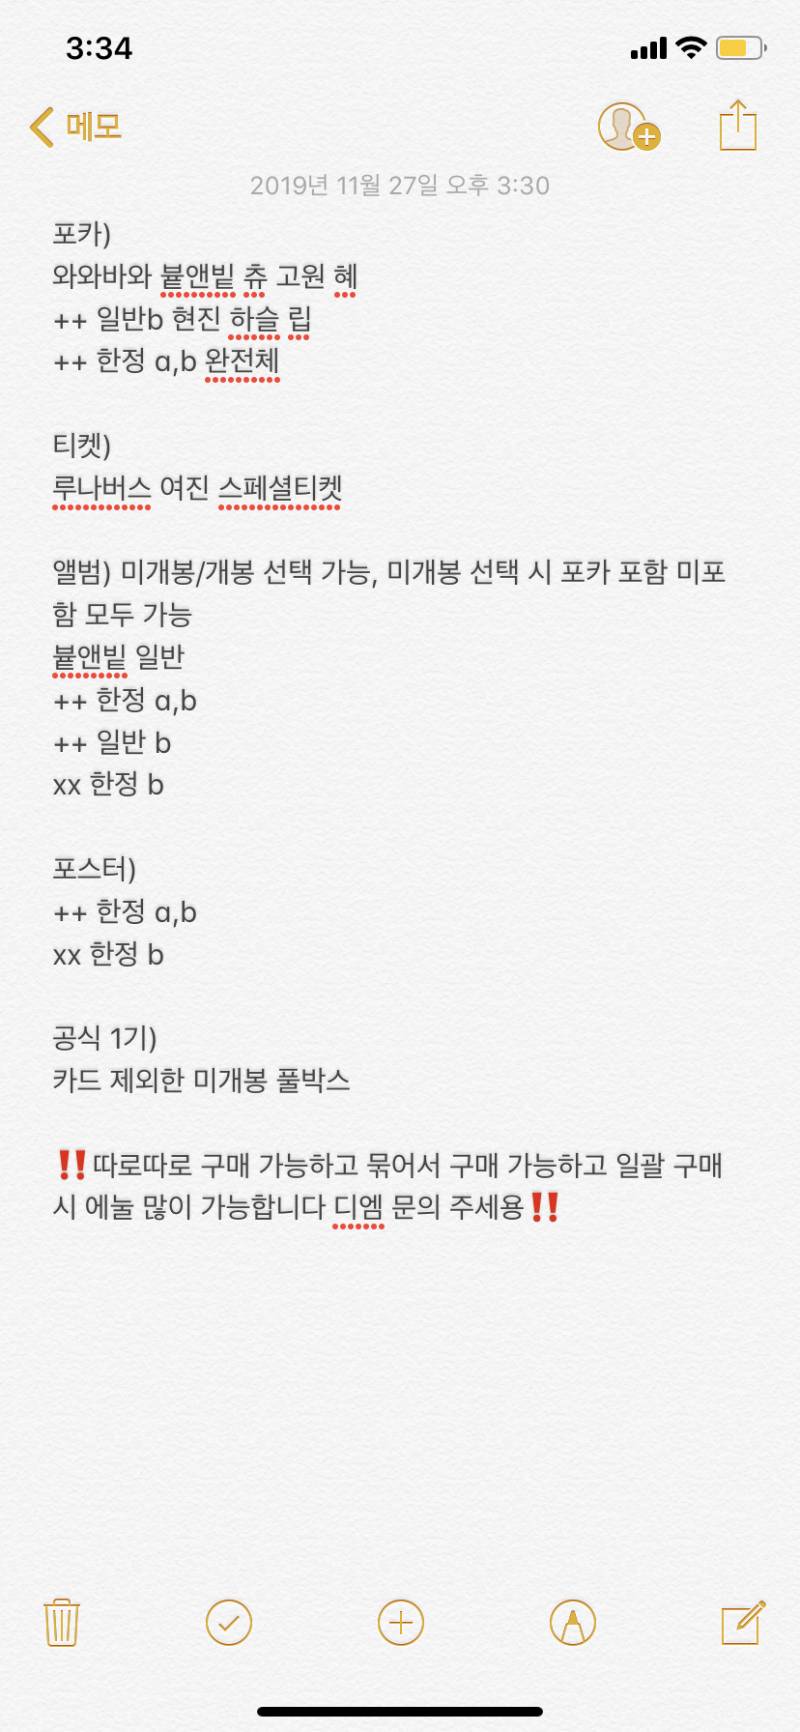 이달의소녀) 앨범 포카 포스터 공식 1기 키트 스페셜티켓 팝니당 | 인스티즈